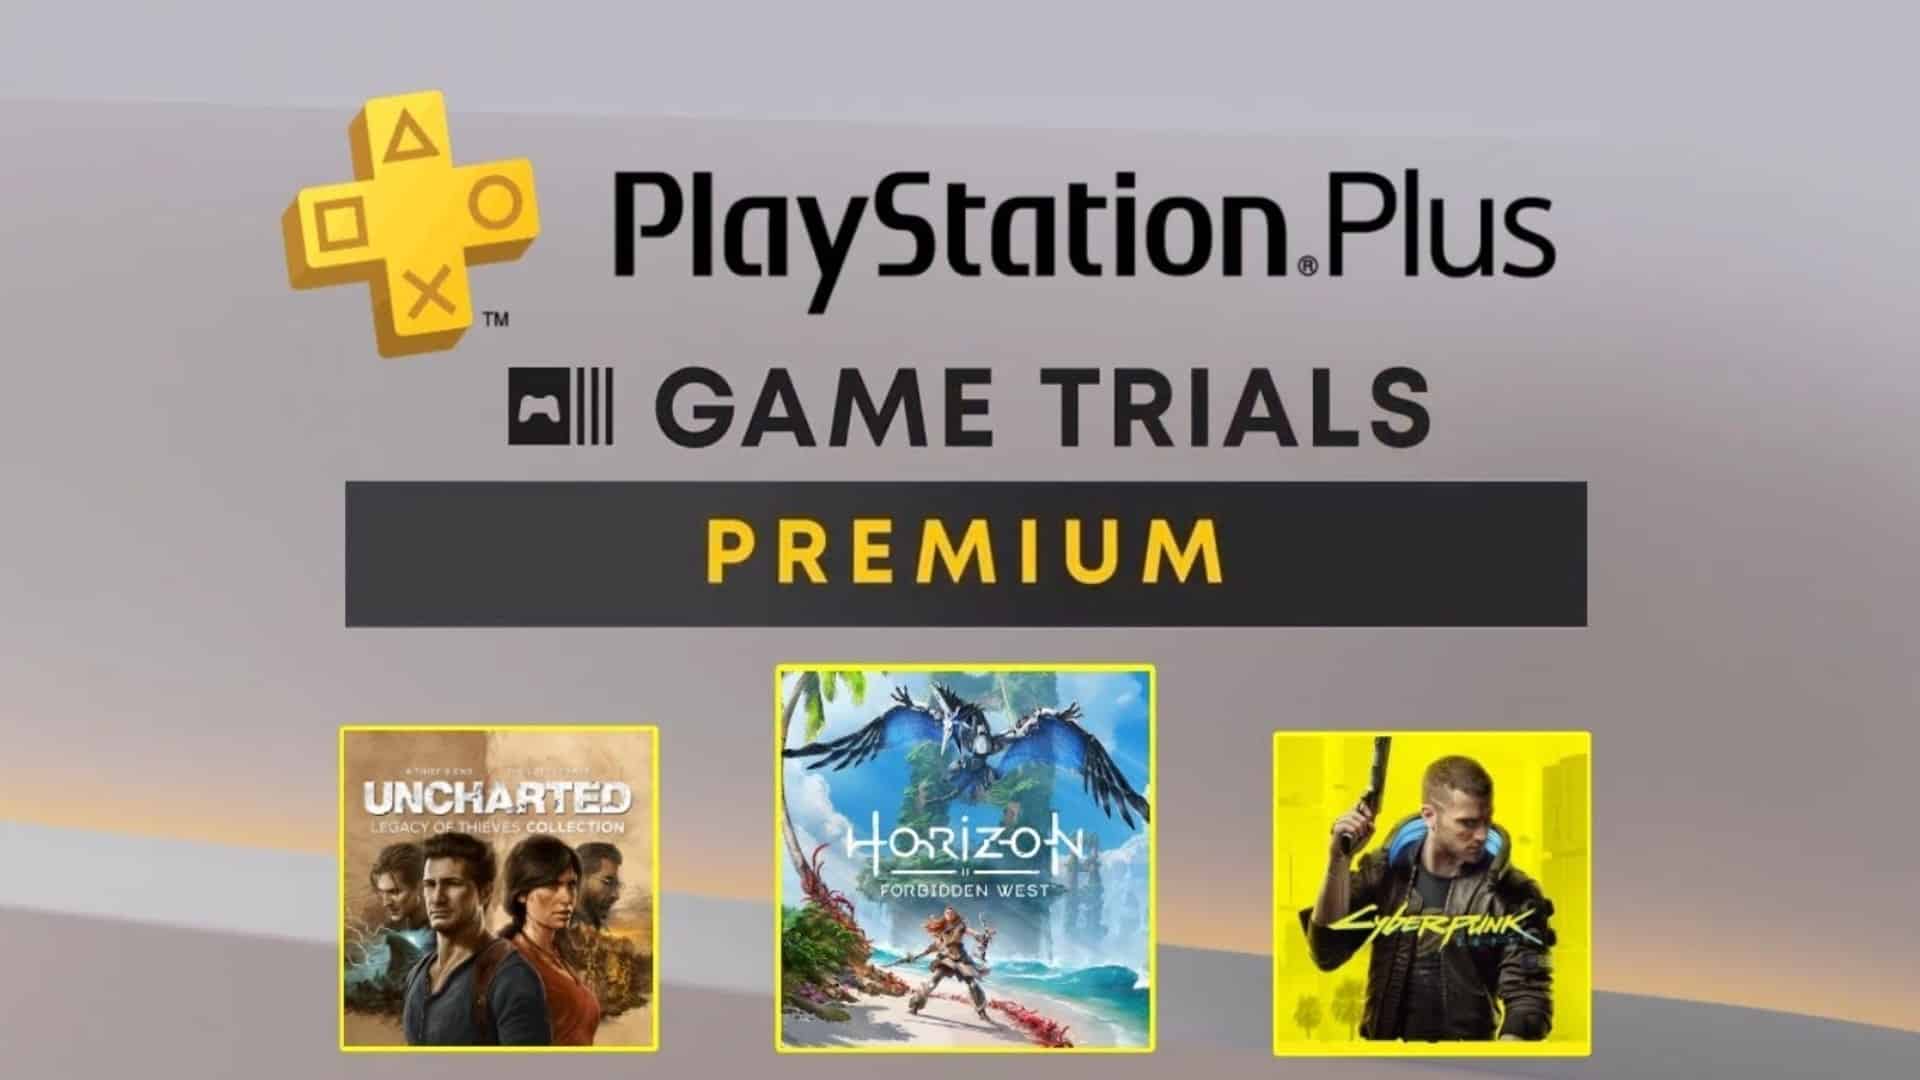 PlayStation Plus Premium Game Trials